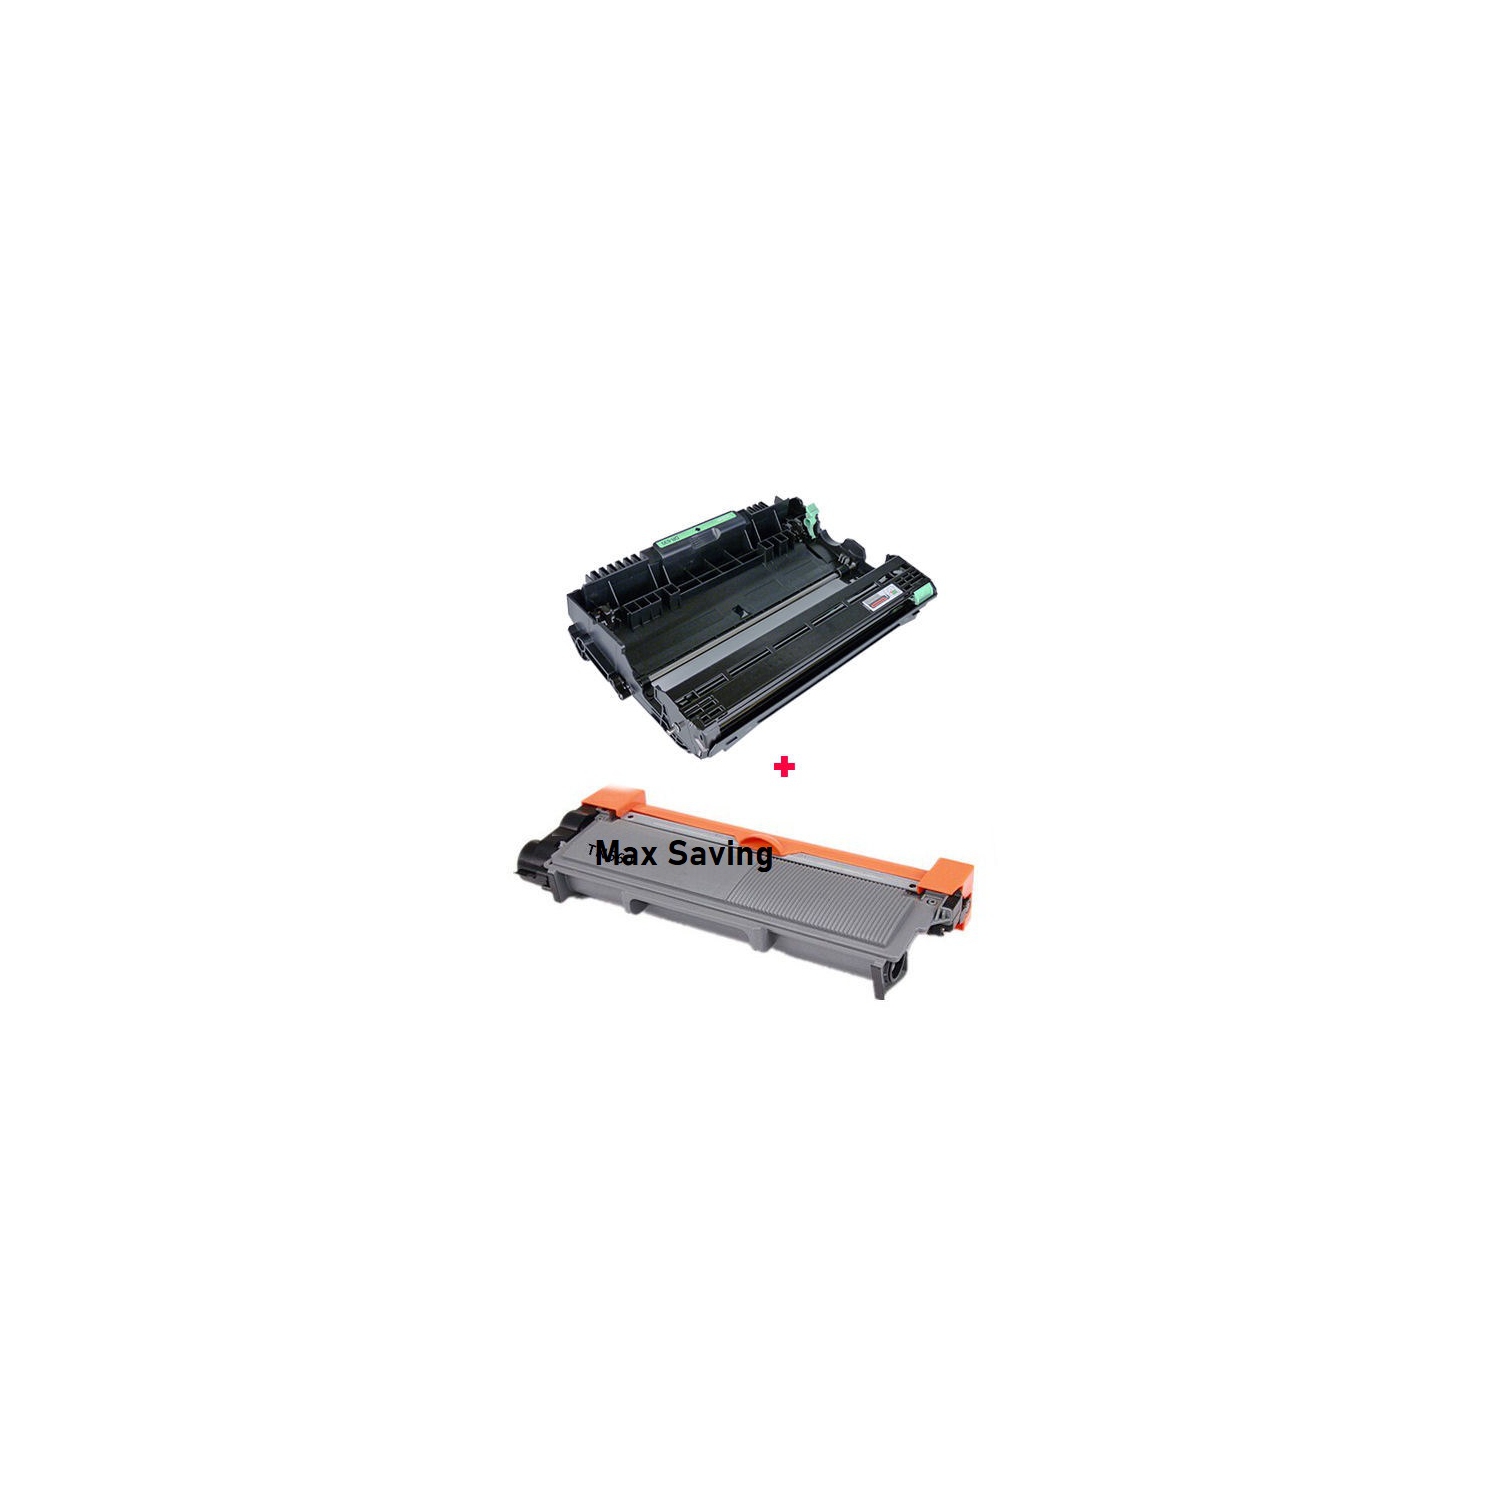 2PK (TN660+ DR630) (Toner Cartridge + Drum unit) Compatible for Brother DCP-L2520DW DCP-L2540DW HL-L2300D HL-L2305W